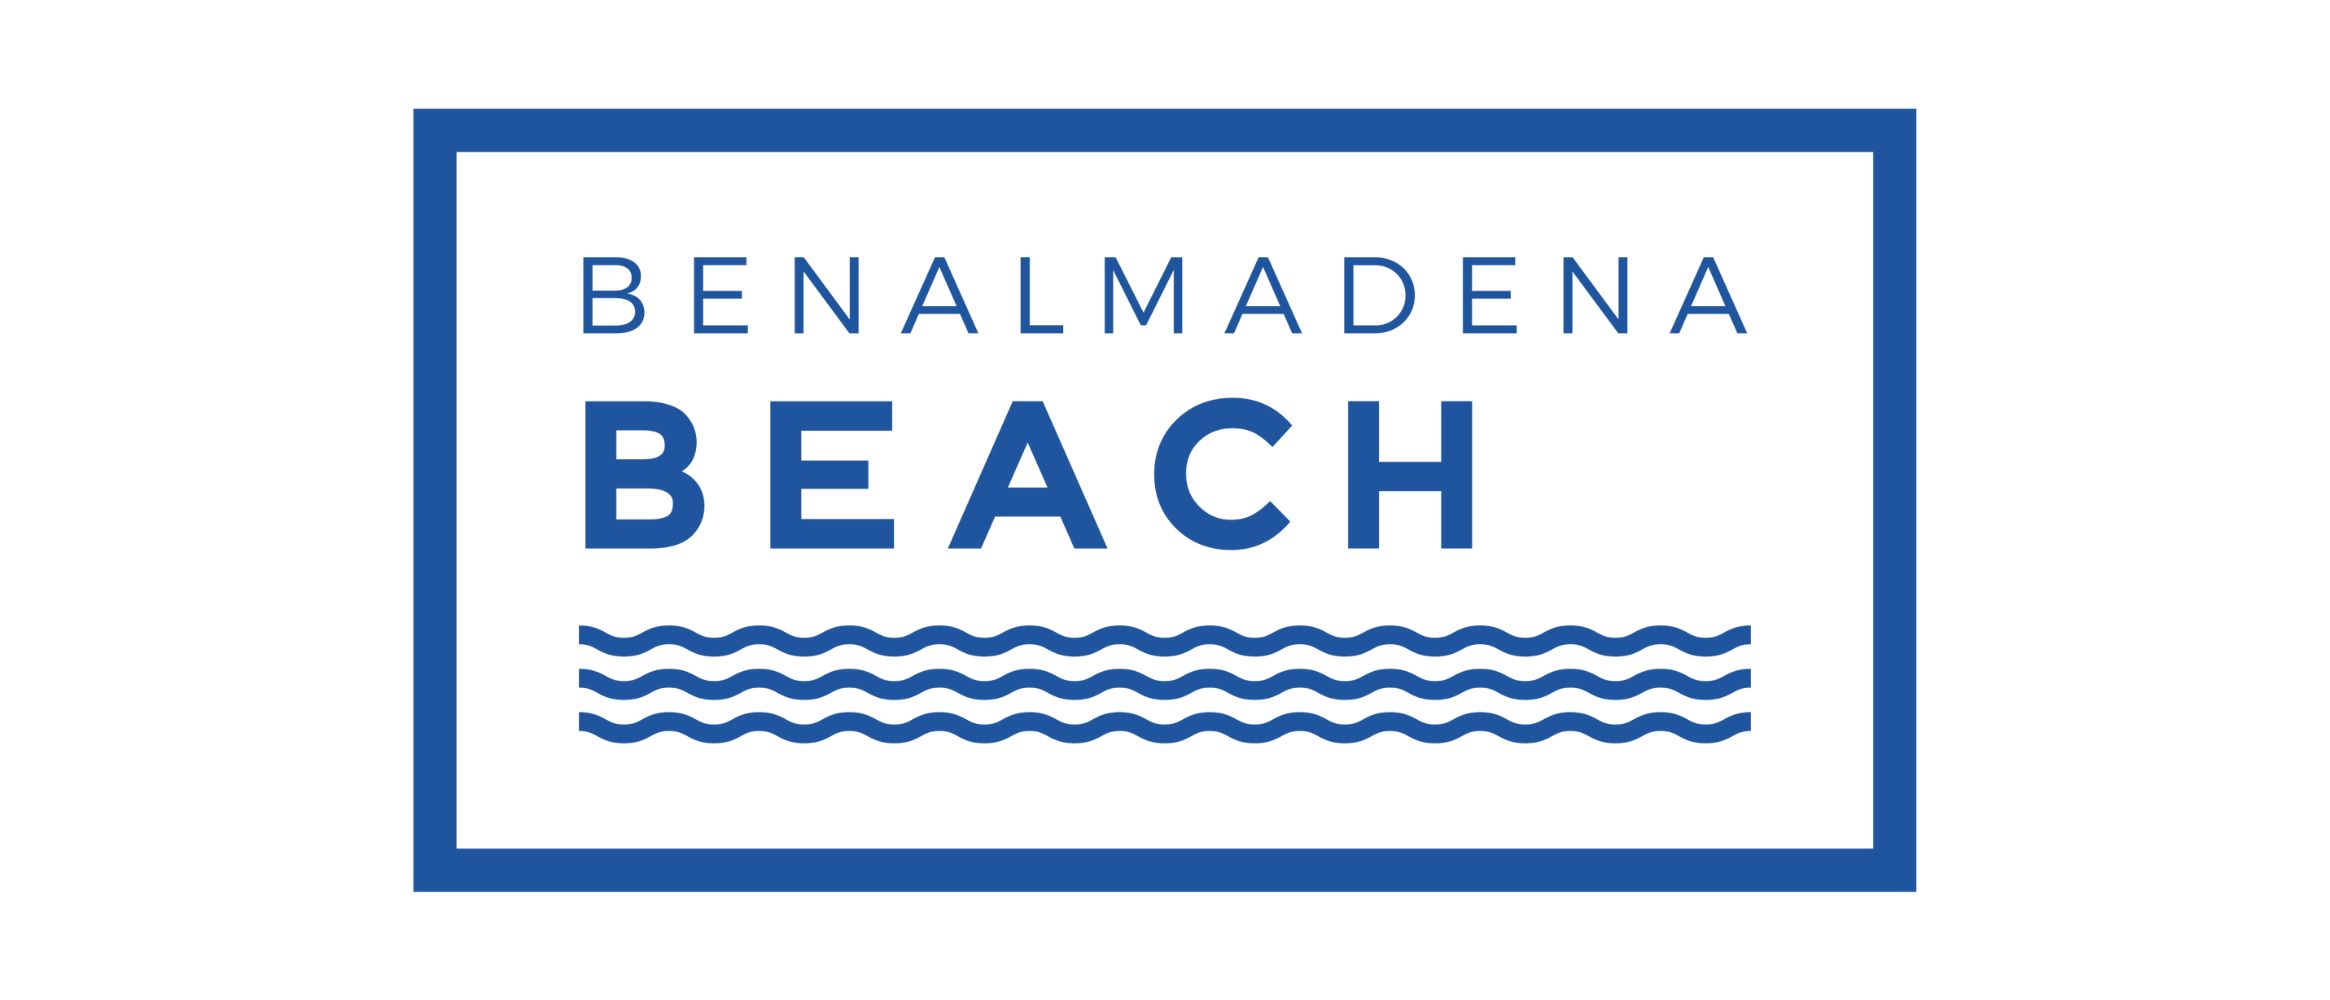 Benalmadena Beach